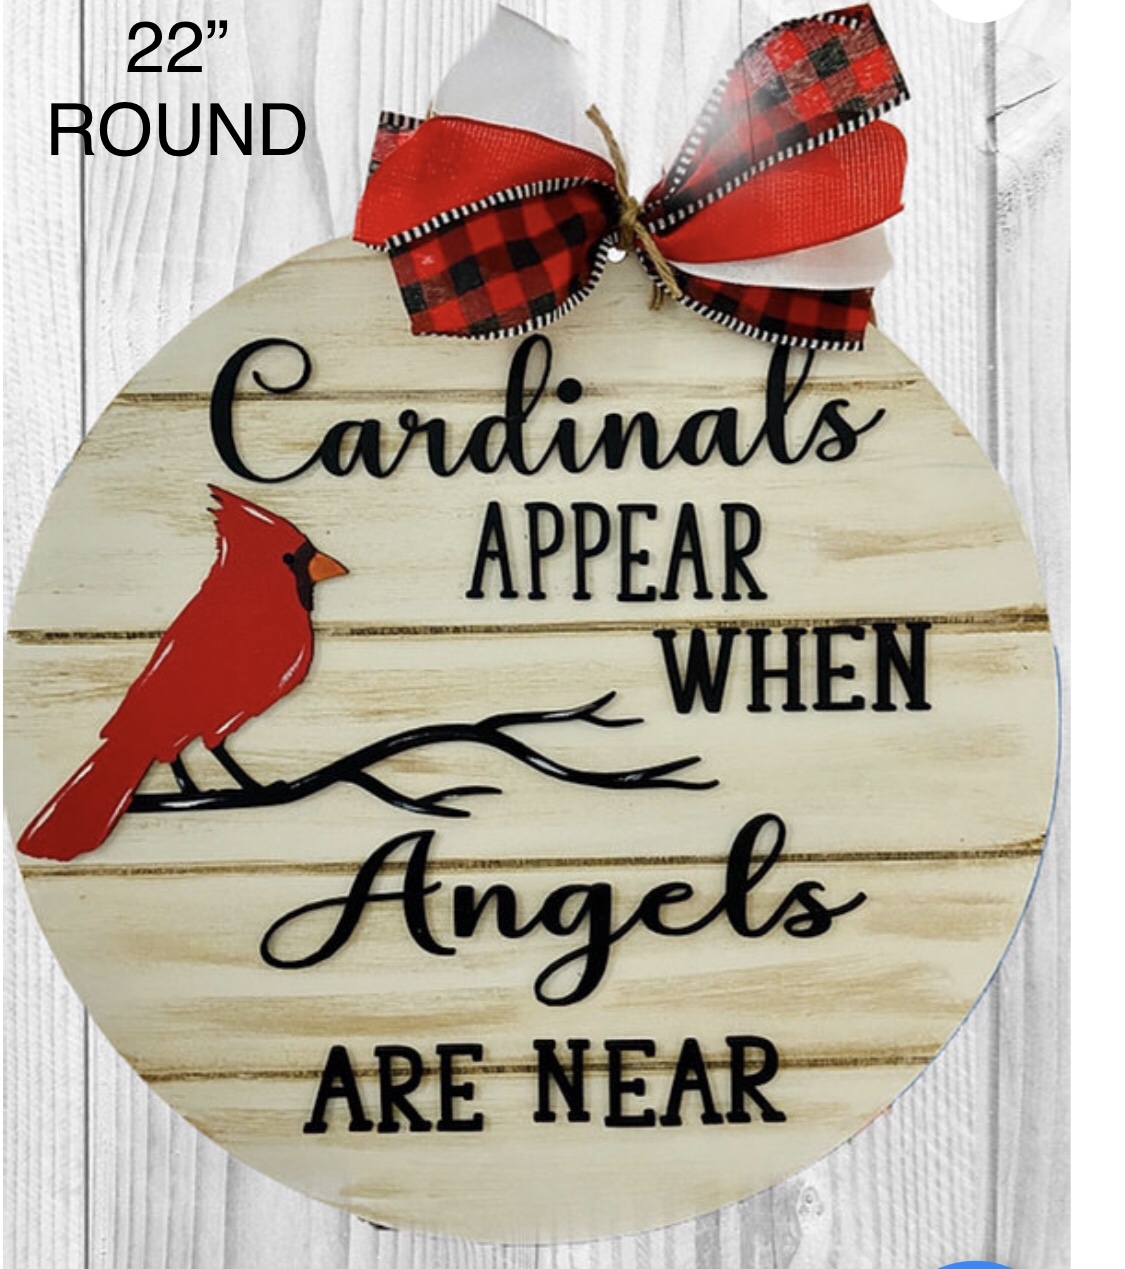 Cardinals appear